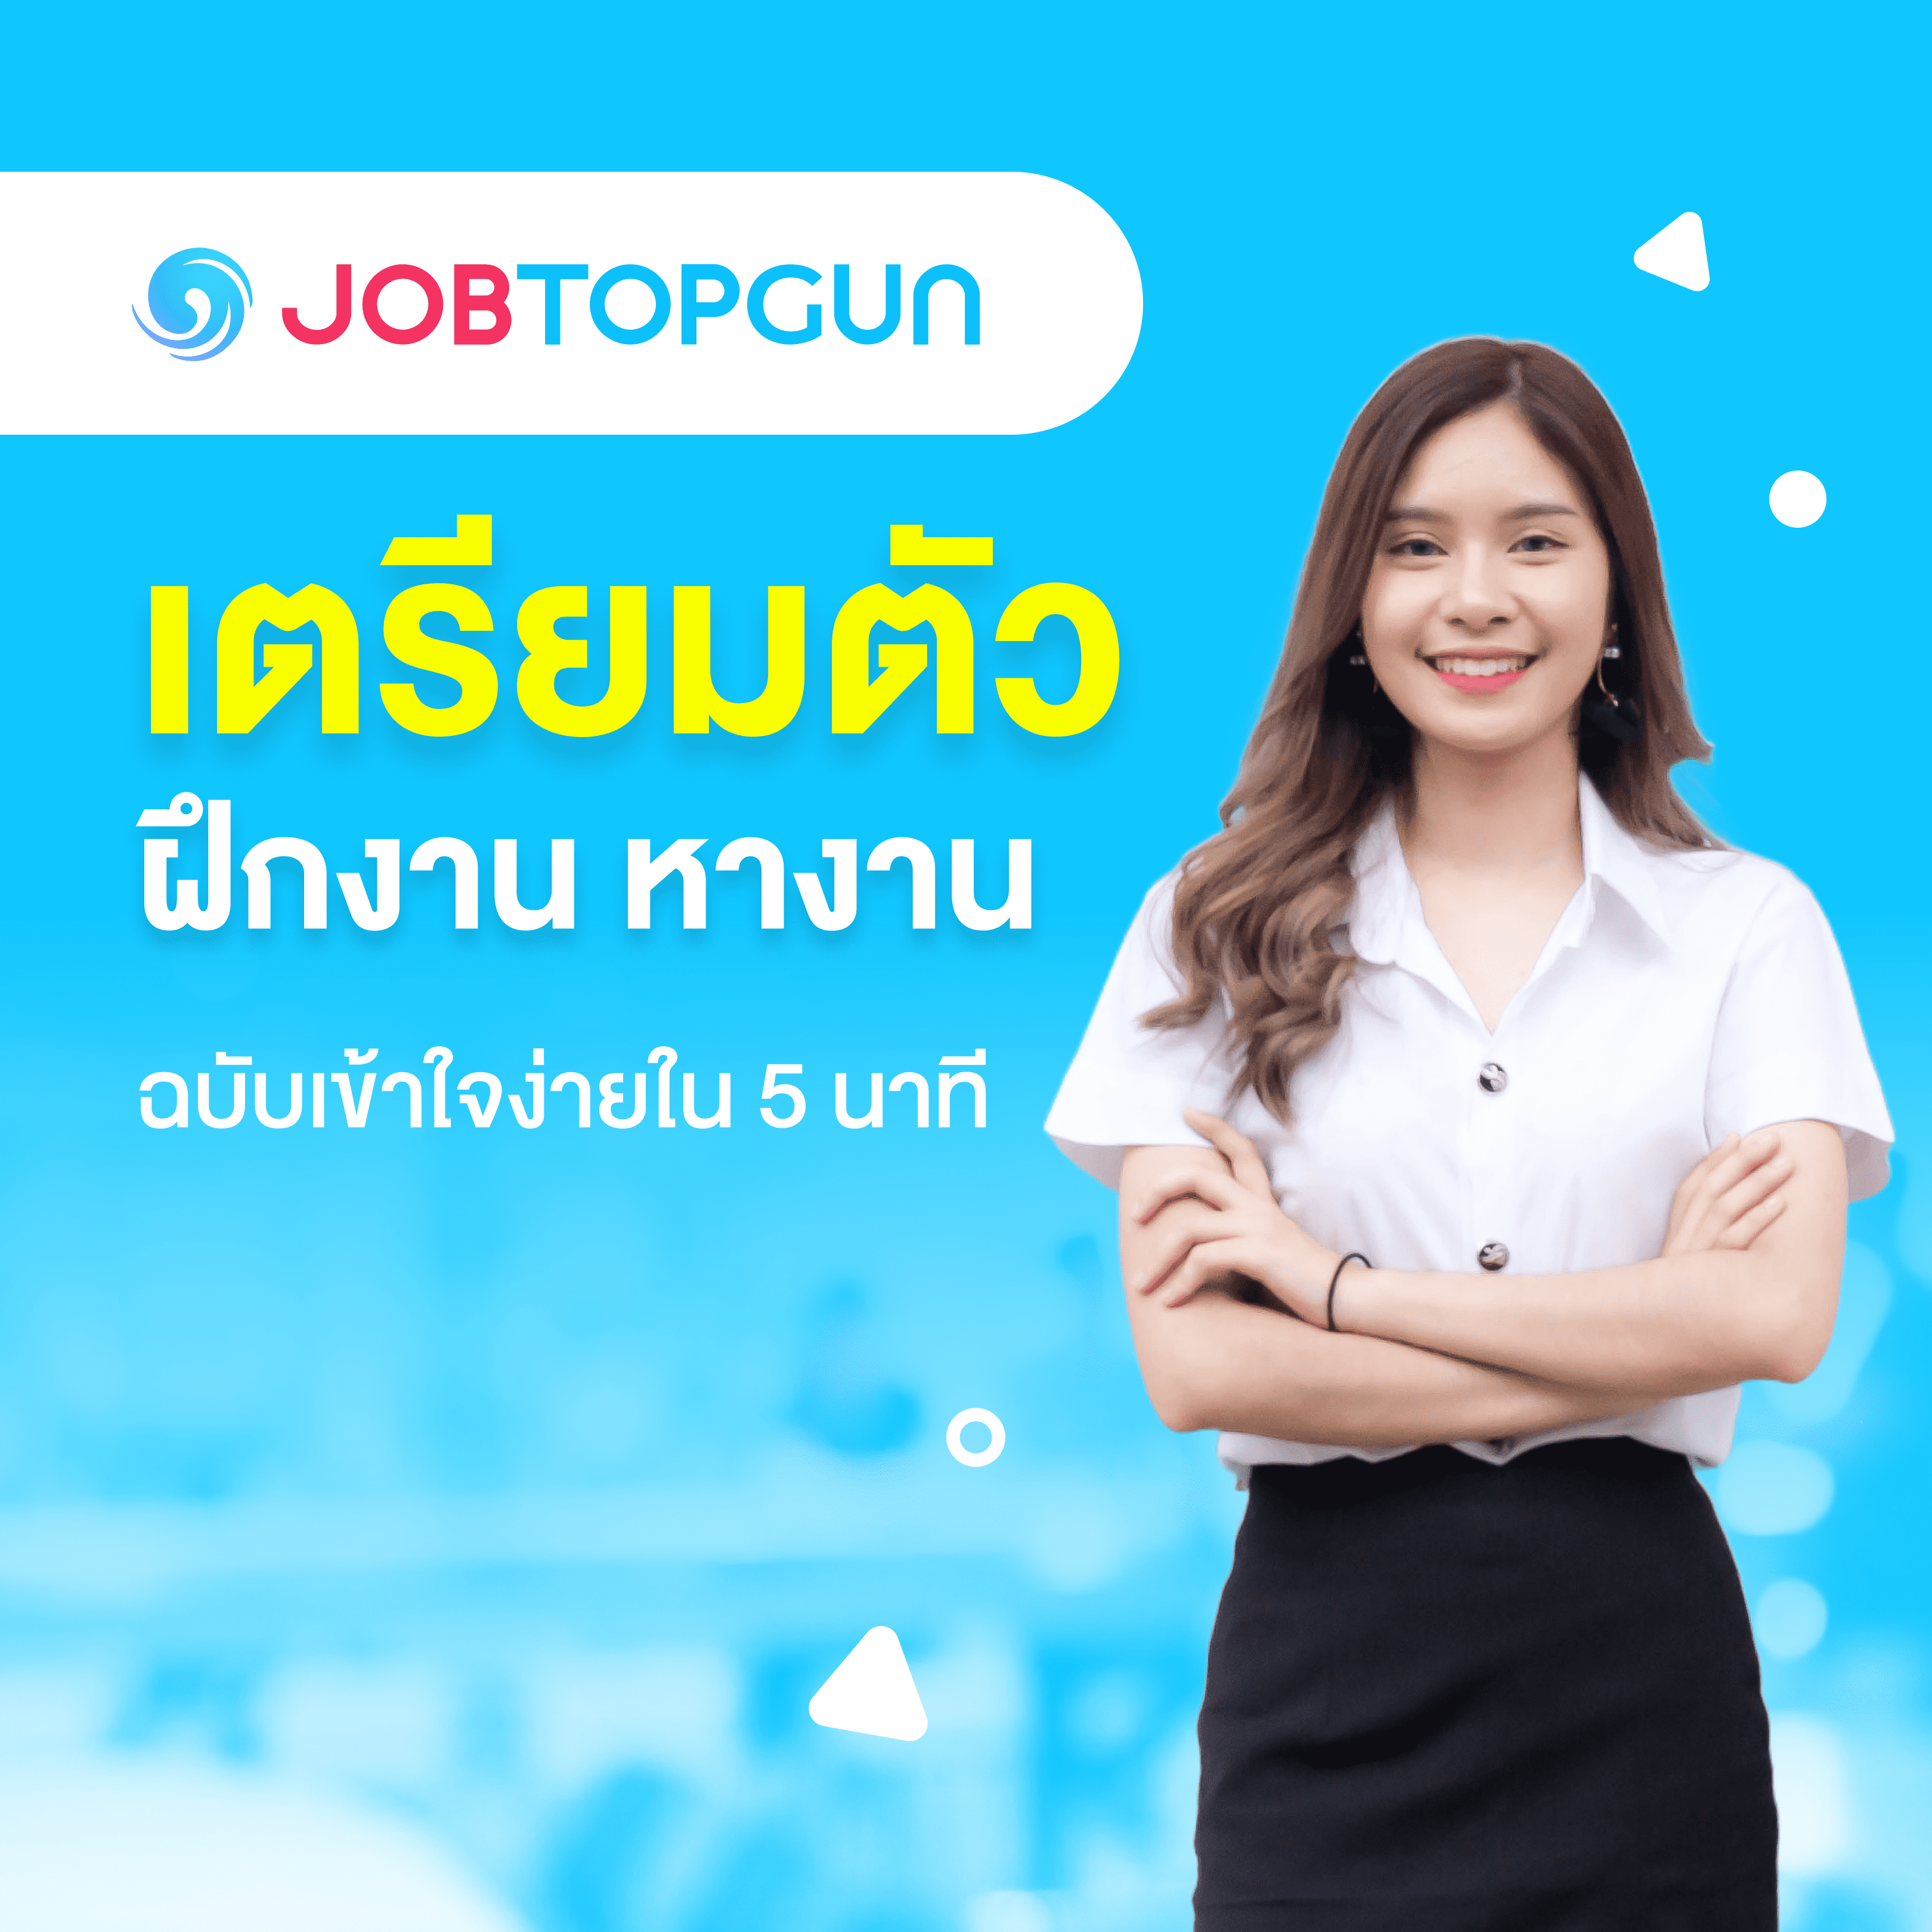 ฝึกงาน หางานง่ายๆ กับ JOBTOPGUN: คู่มือหางานสำหรับนักศึกษาฝึกงานและจบใหม่มหาวิทยาลัยแม่ฟ้าหลวง